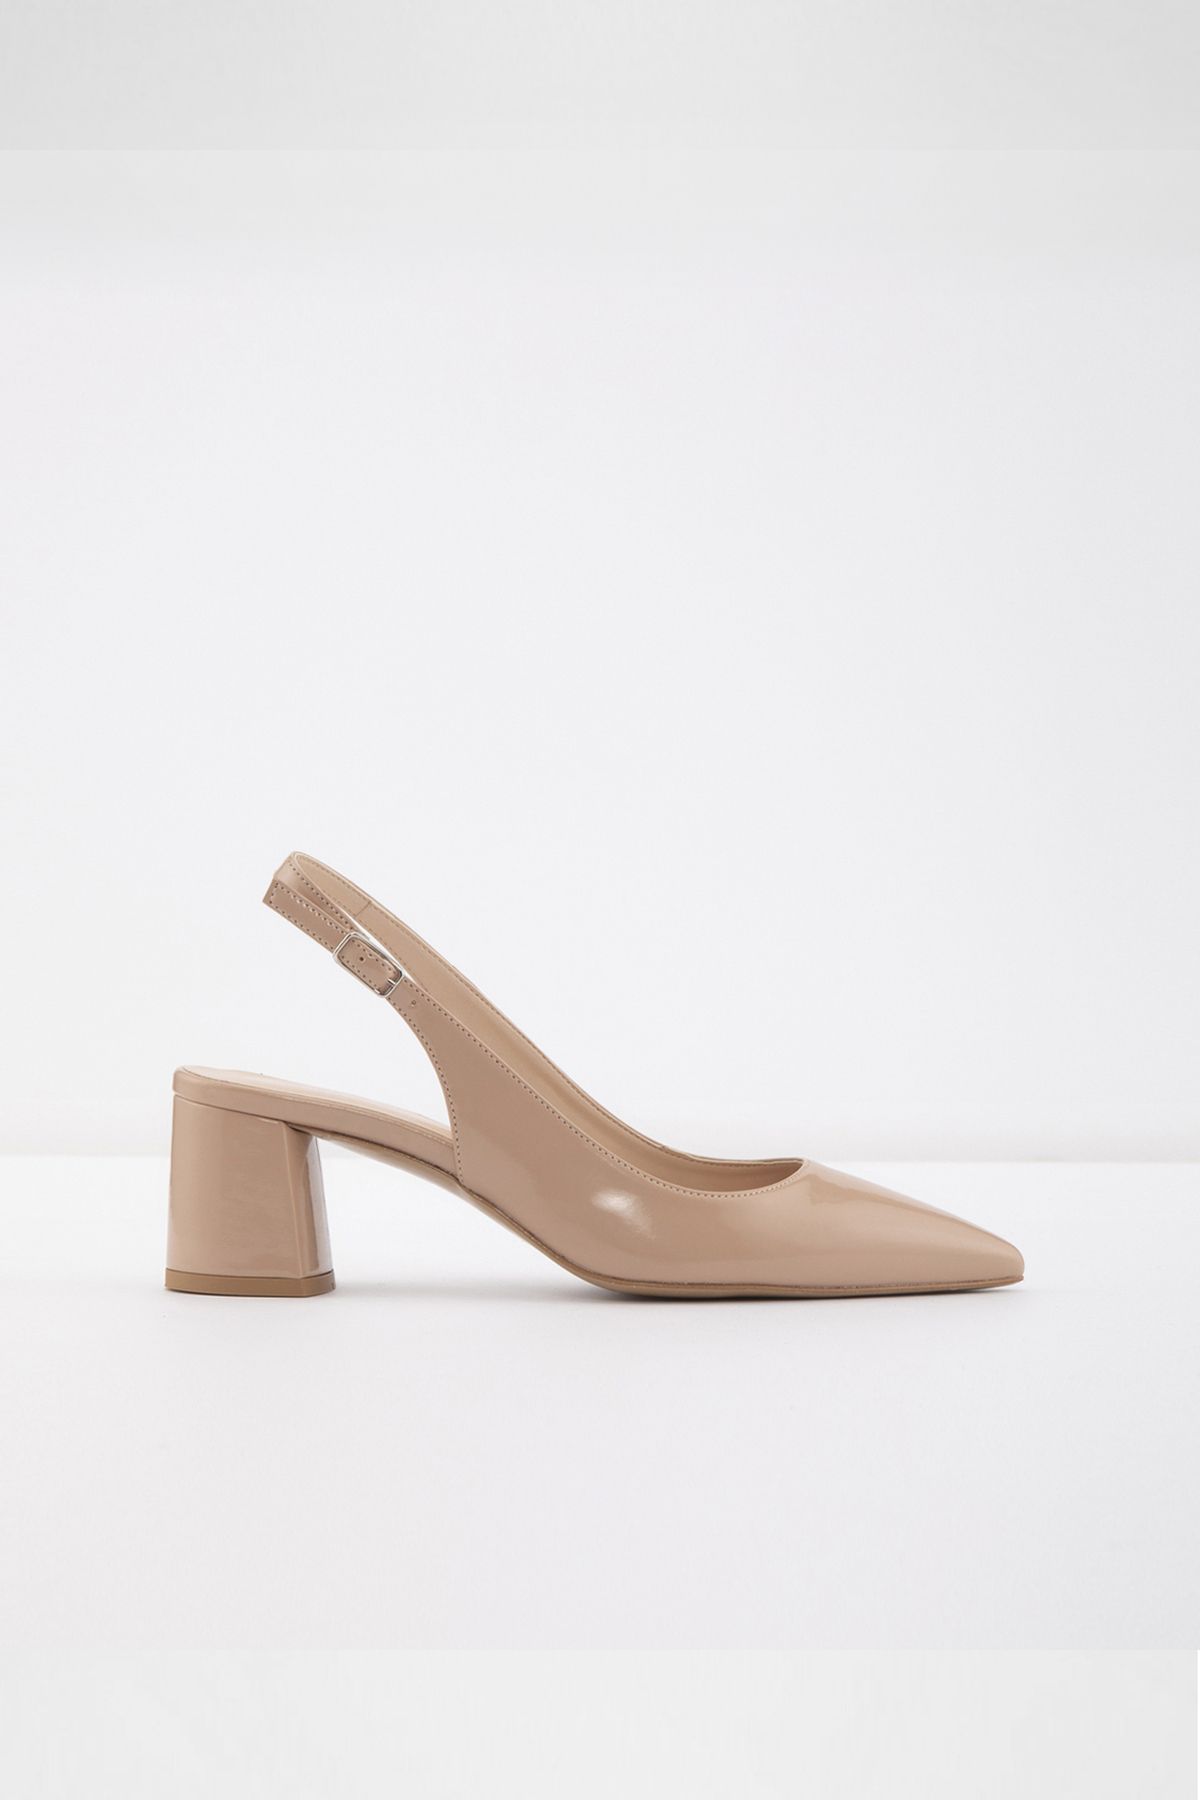 Aldo BONUS-TR - Bej Kadın Topuklu Ayakkabı